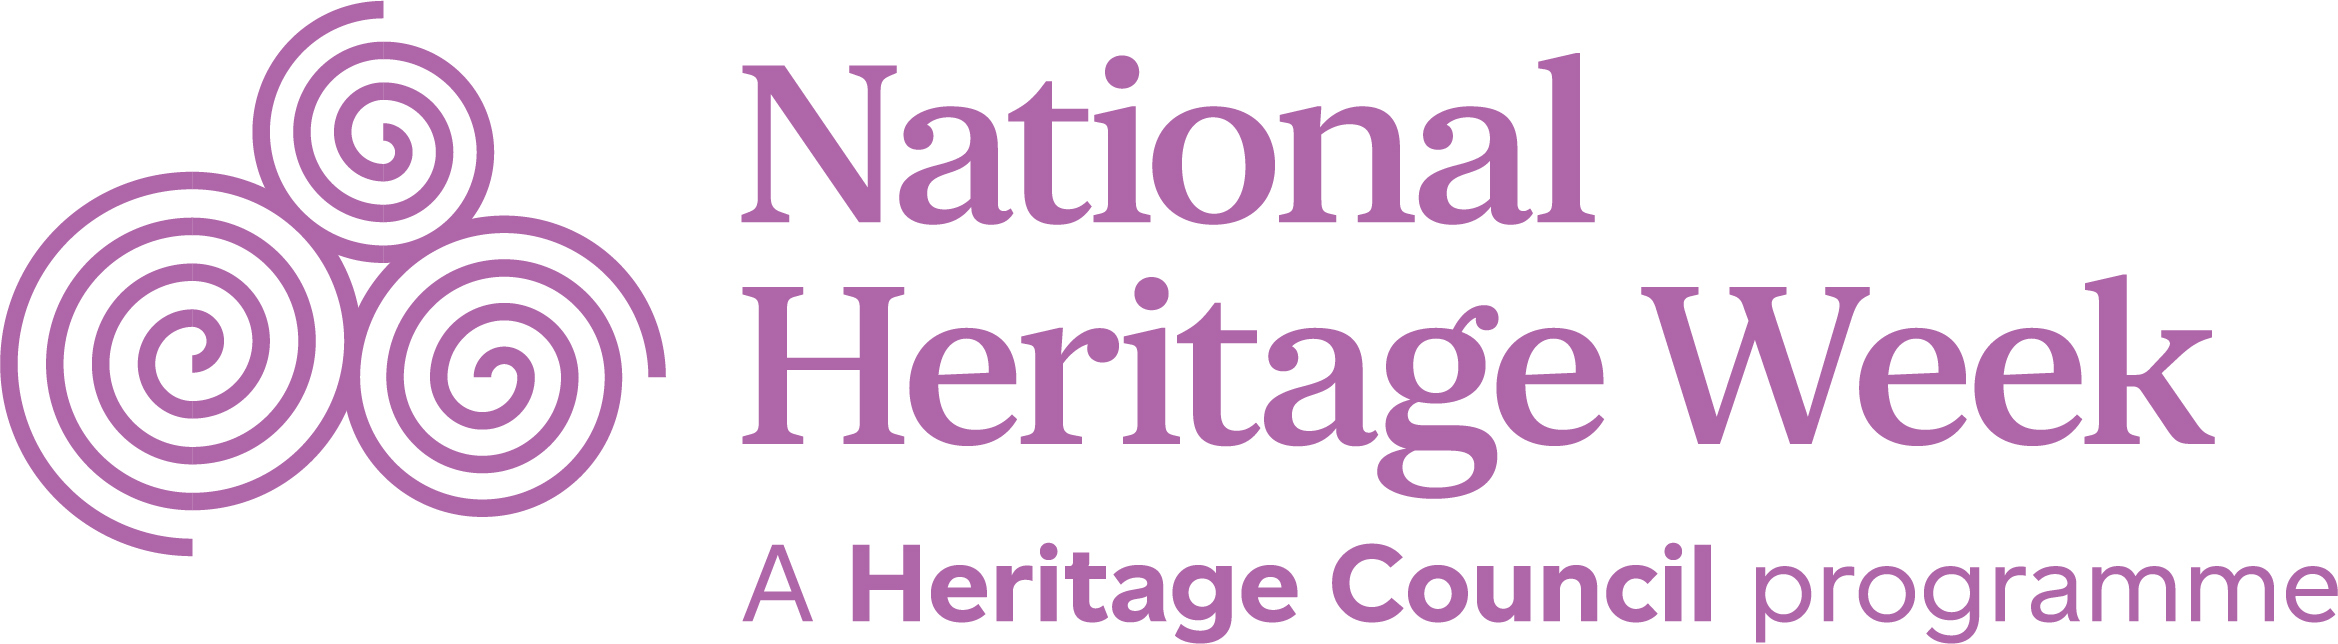 National-Heritage-Week